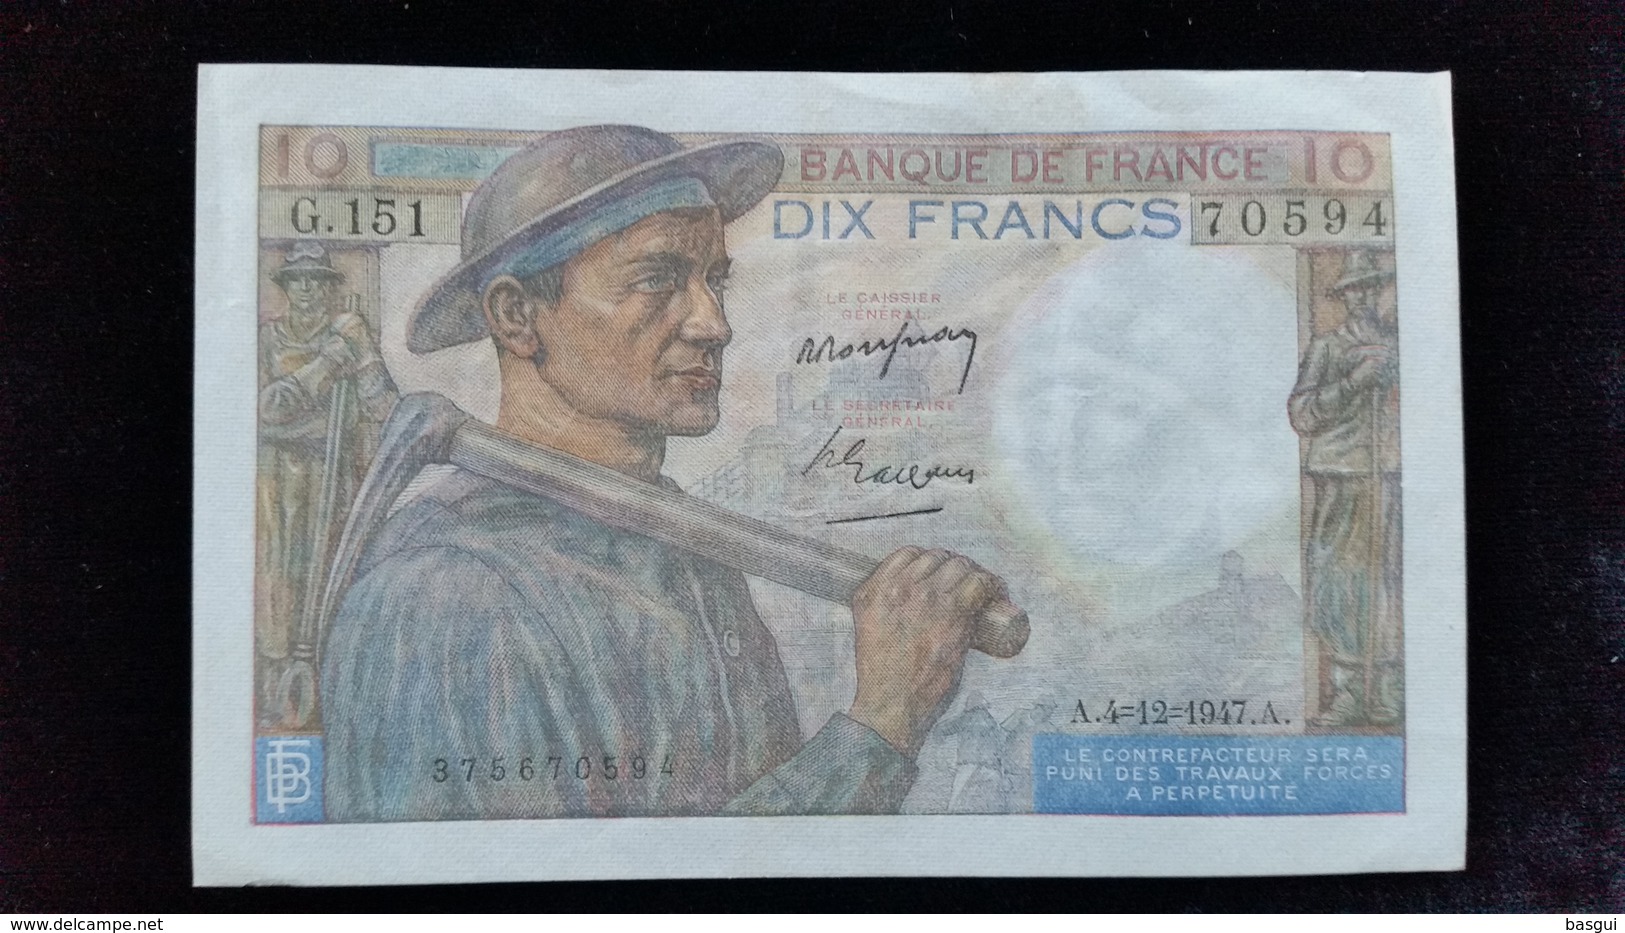 Billet De 10 Francs &quot;Mineur &quot; 1947.G.151 - ...-1889 Anciens Francs Circulés Au XIXème